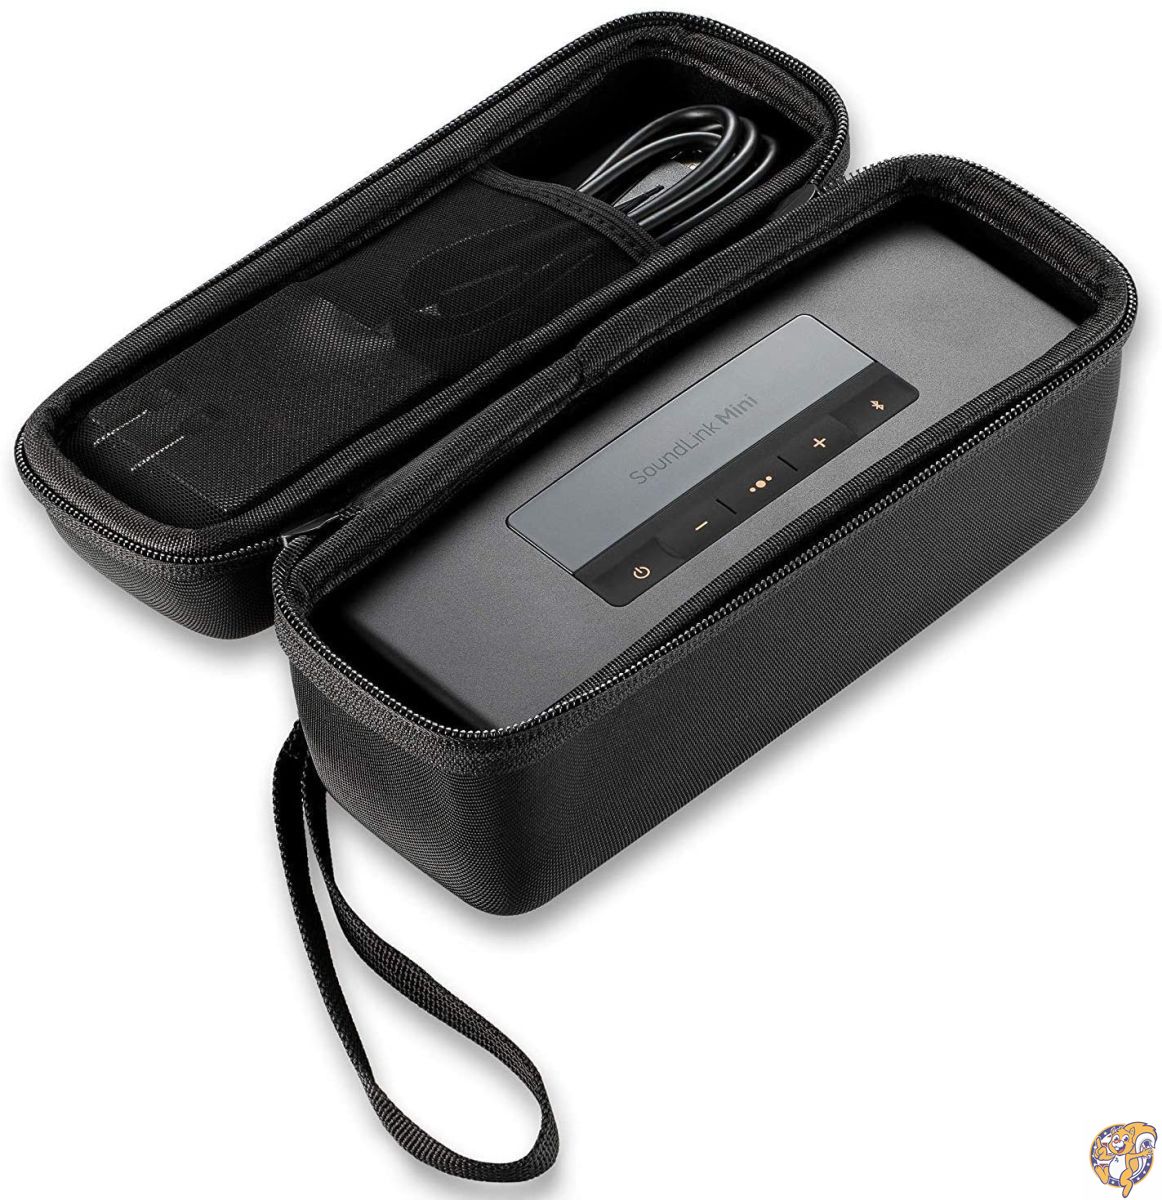 Caseling ハードケース ボーズ製サウンドリンク・ミニのブルートゥース対応ポータブル・ワイヤレススピーカー用旅行用ハードケース 送料無料